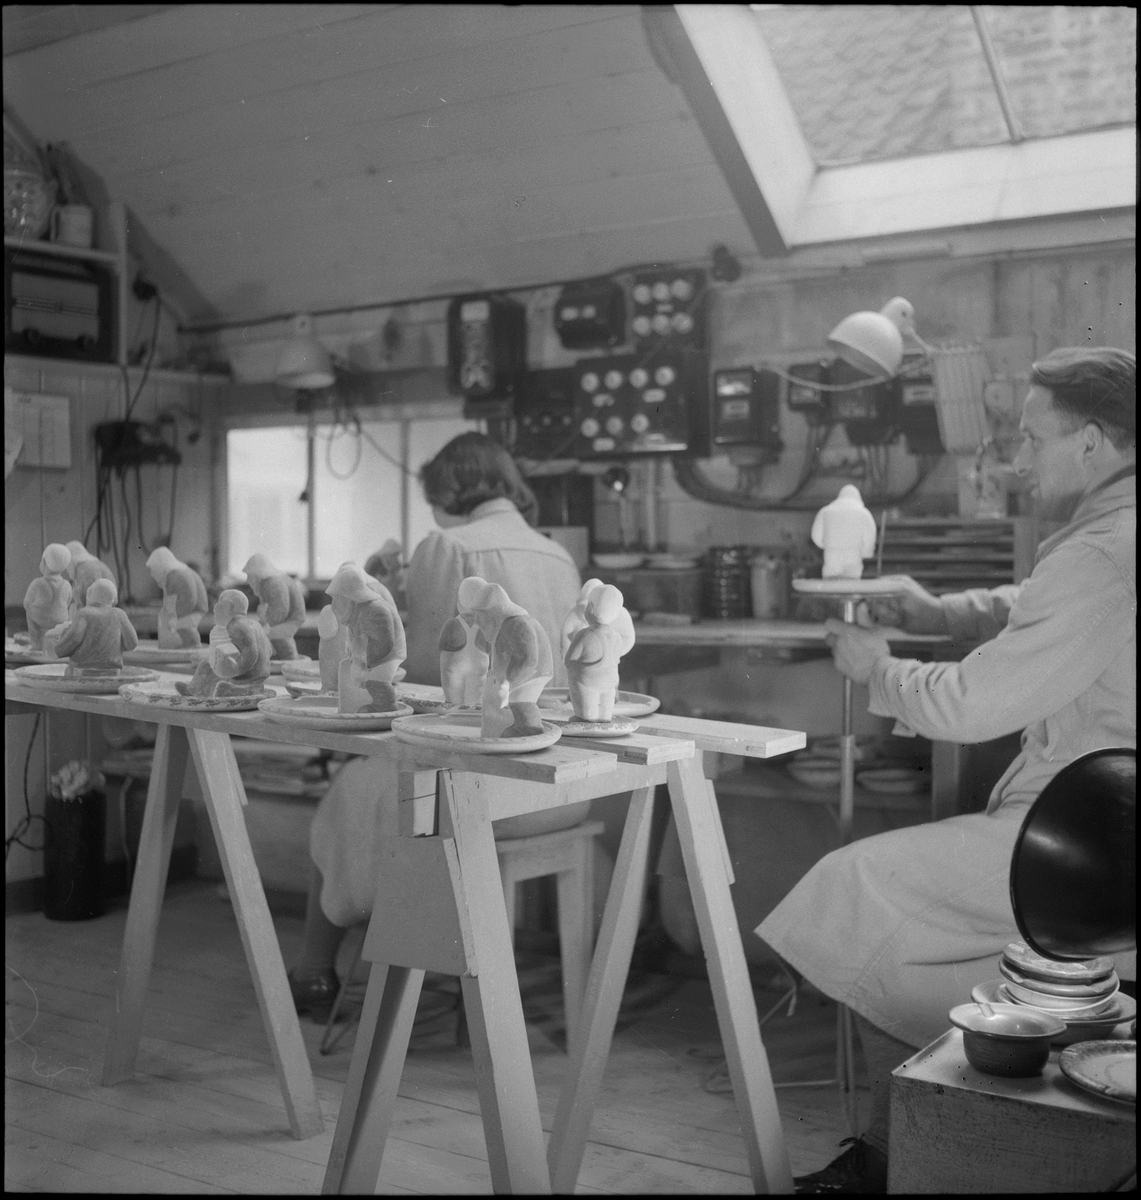 Keramiker Thorvald Olsen og en kvinne maler keramiske produkter i Olsens verksted. På bordet er det flere keramikkfigurer.